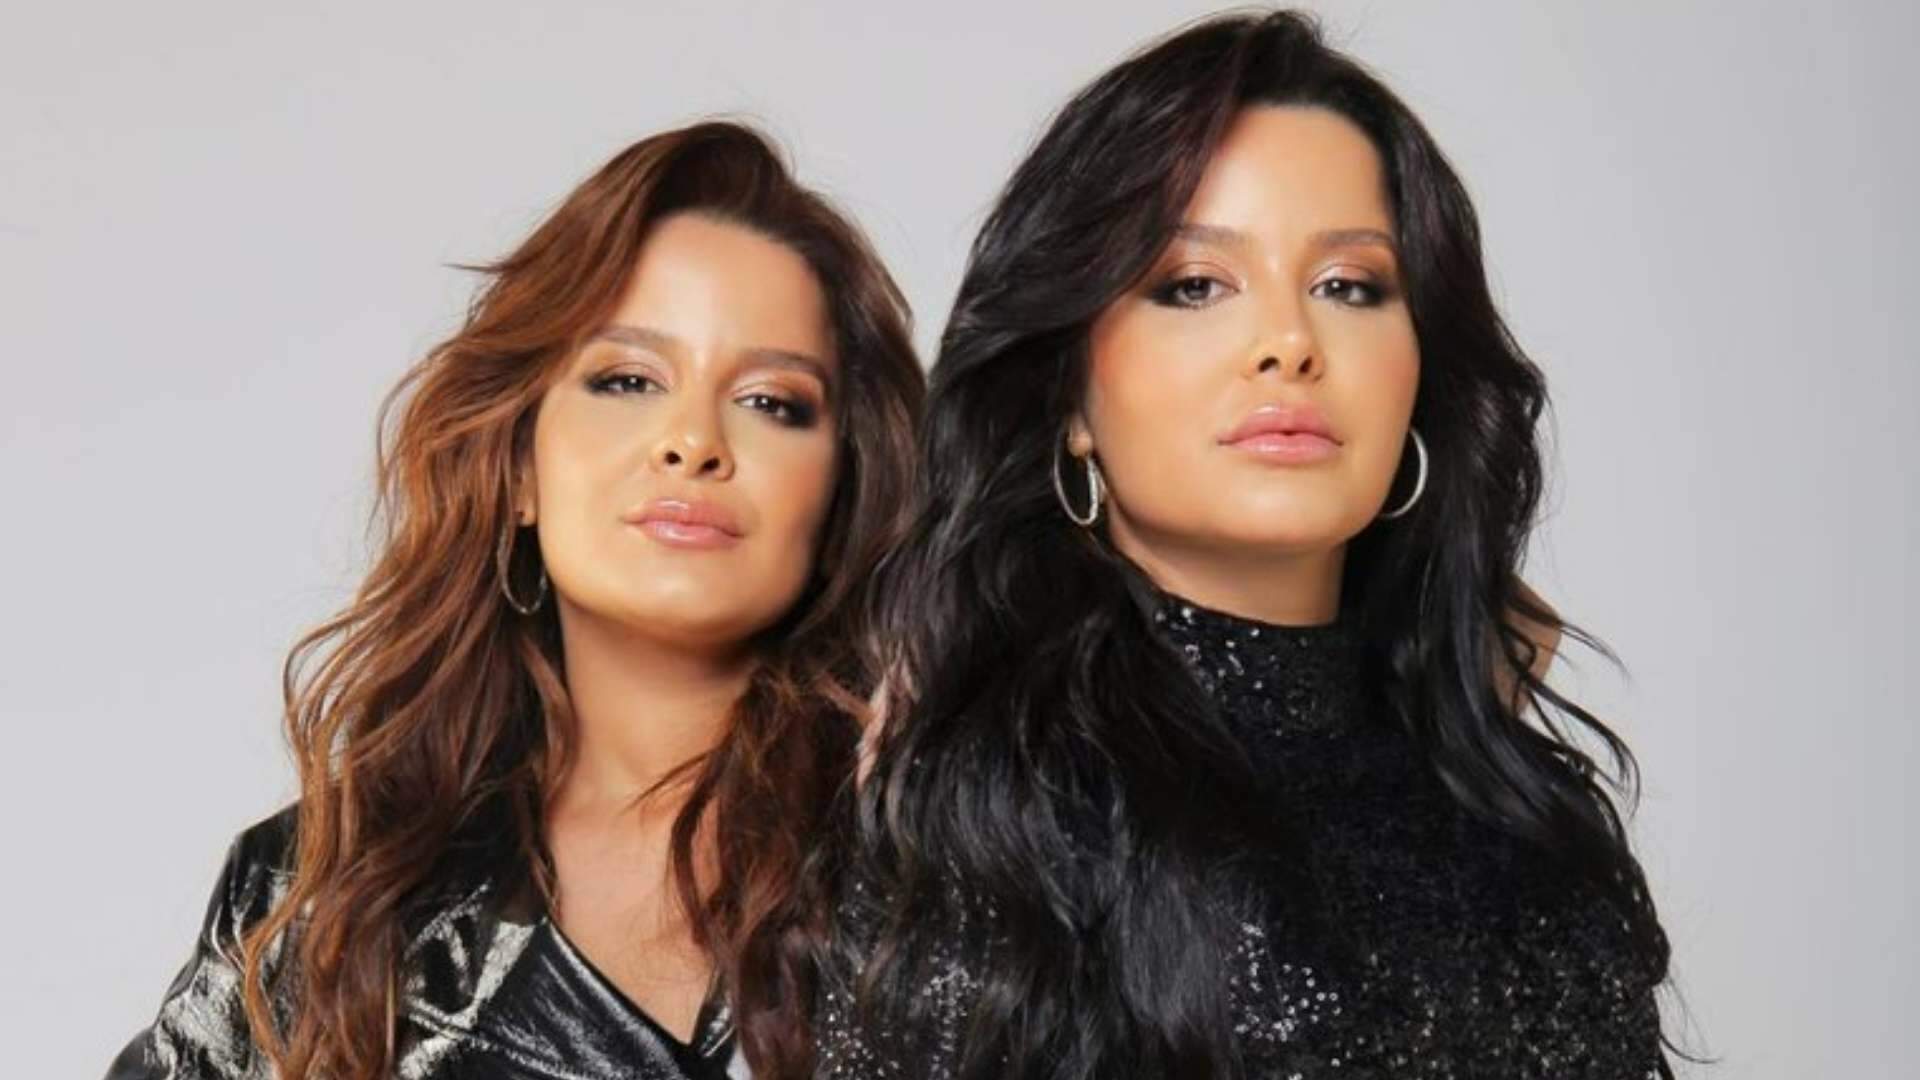 Maiara e Maraisa lançam parceria romântica com famoso cantor na semana do Dia dos Namorados